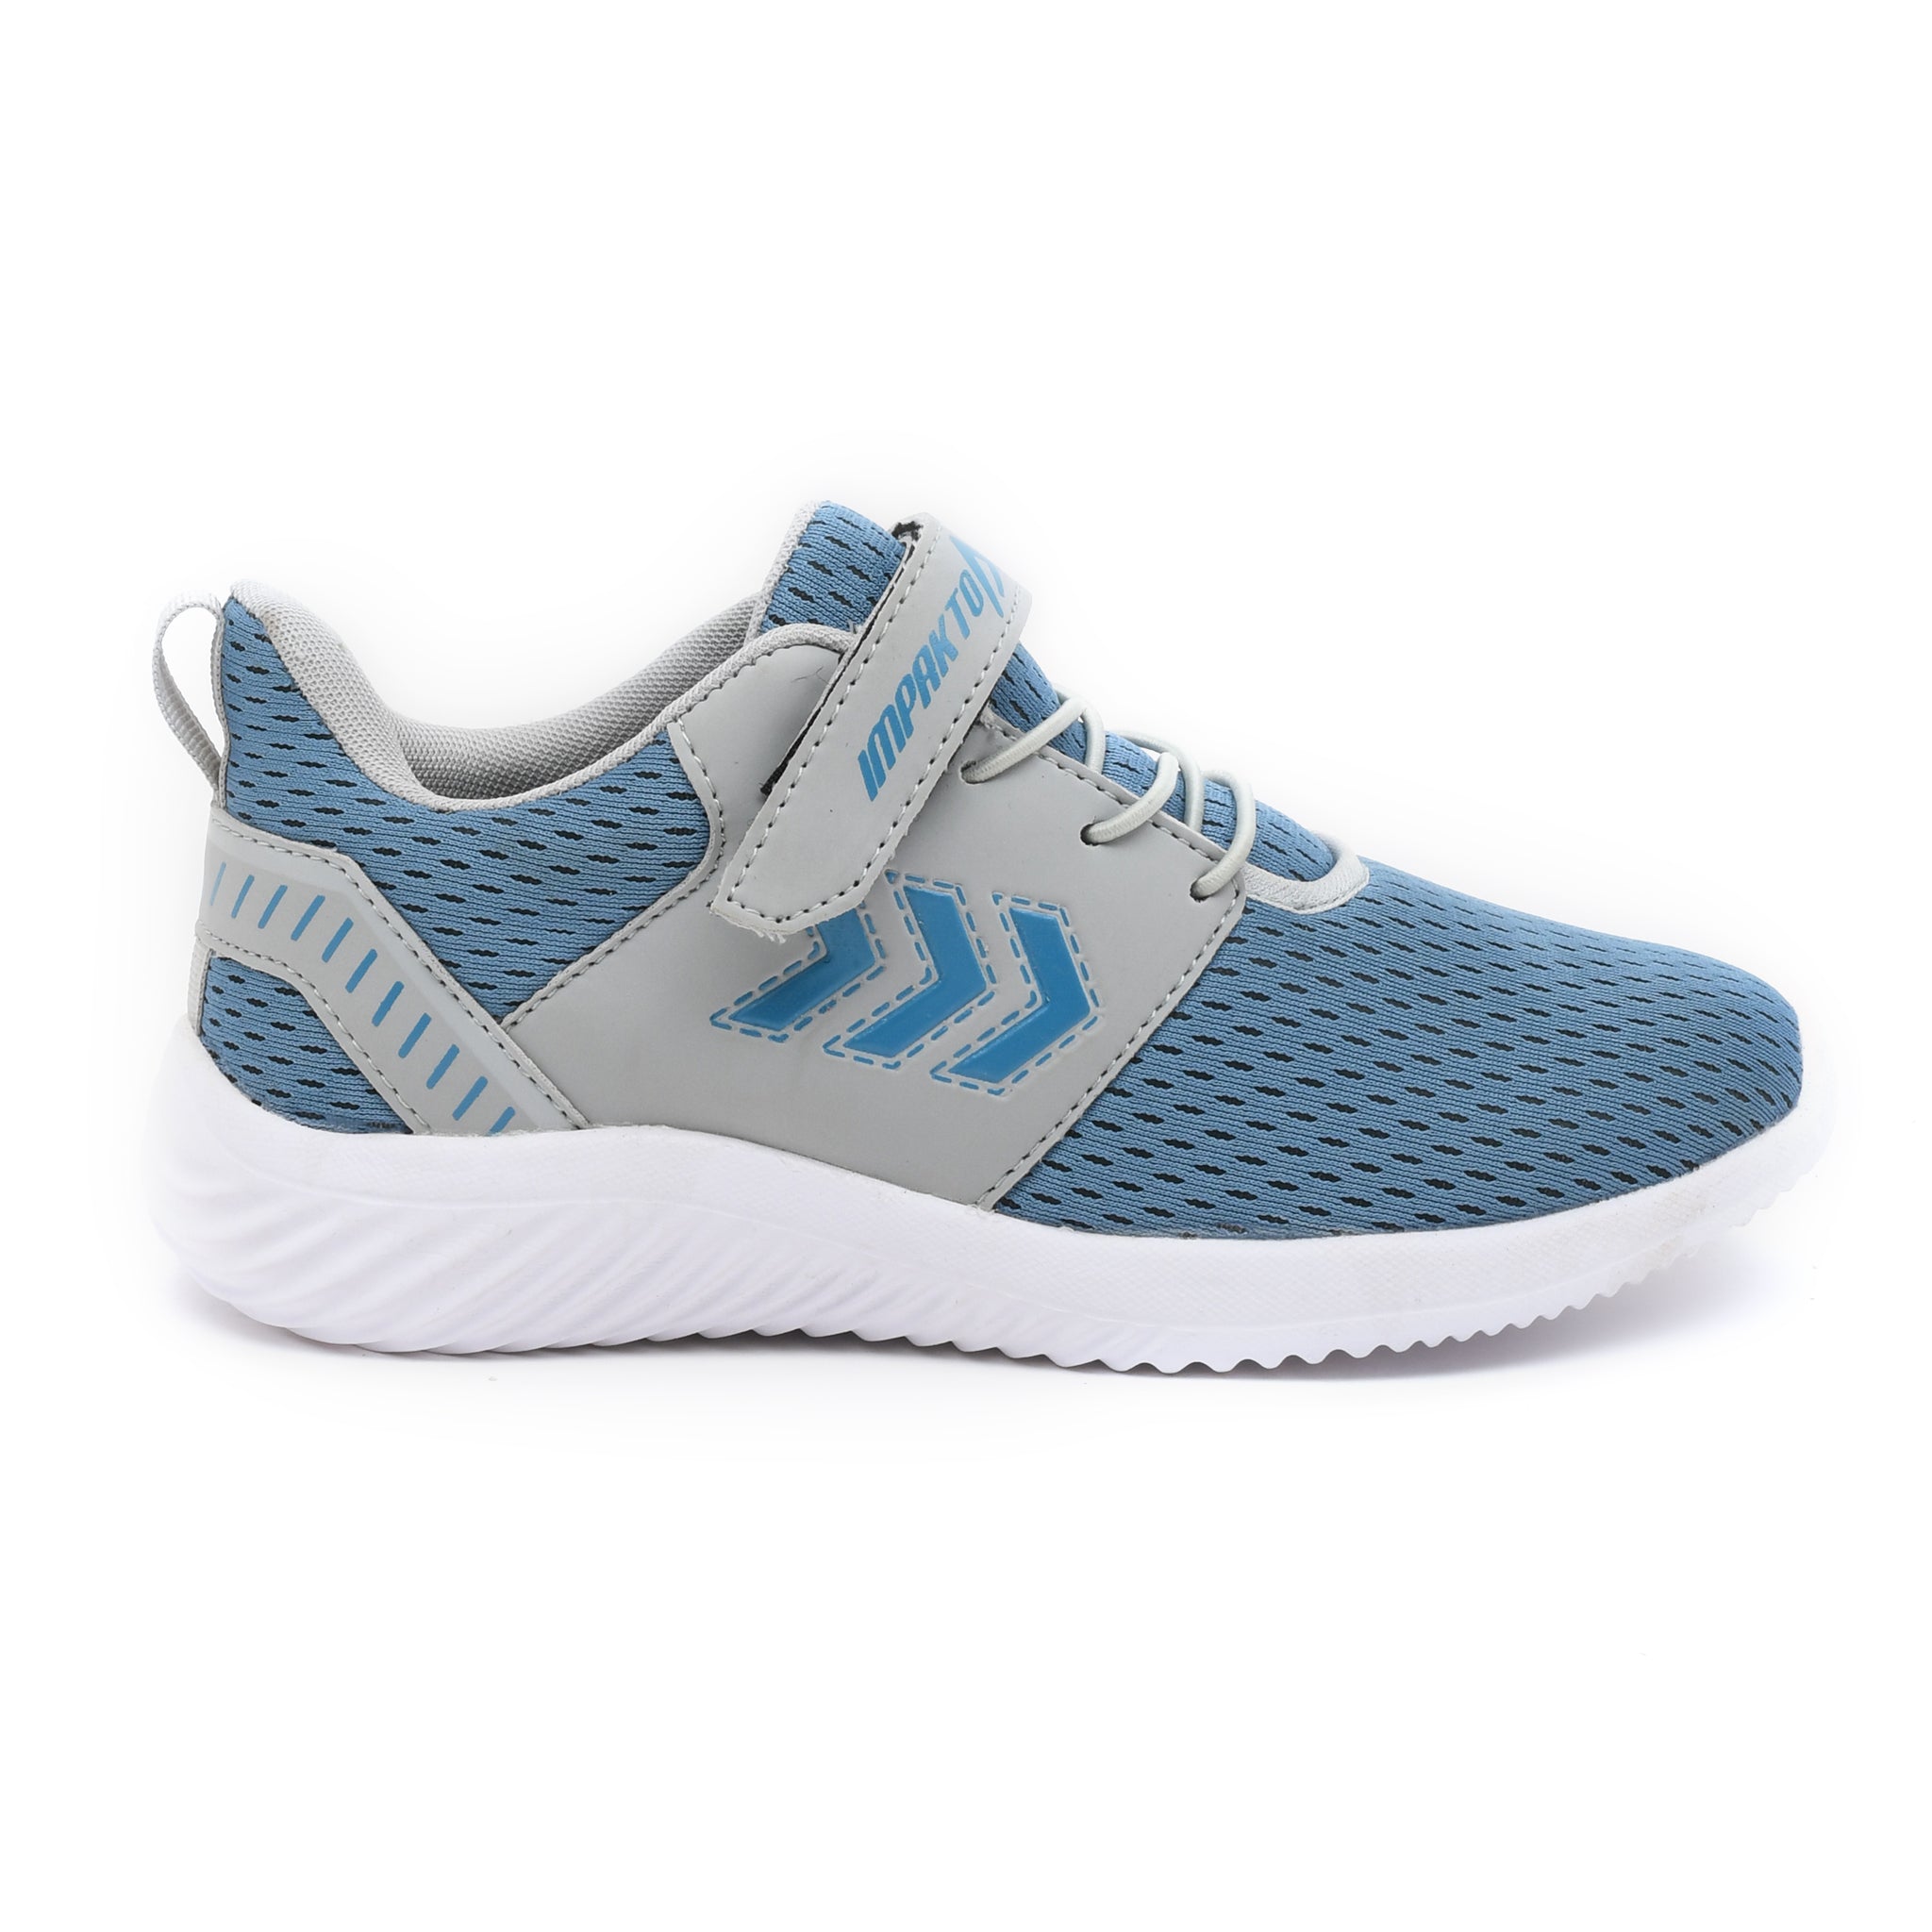 Impakto Celestial Blue Women's Running Shoes